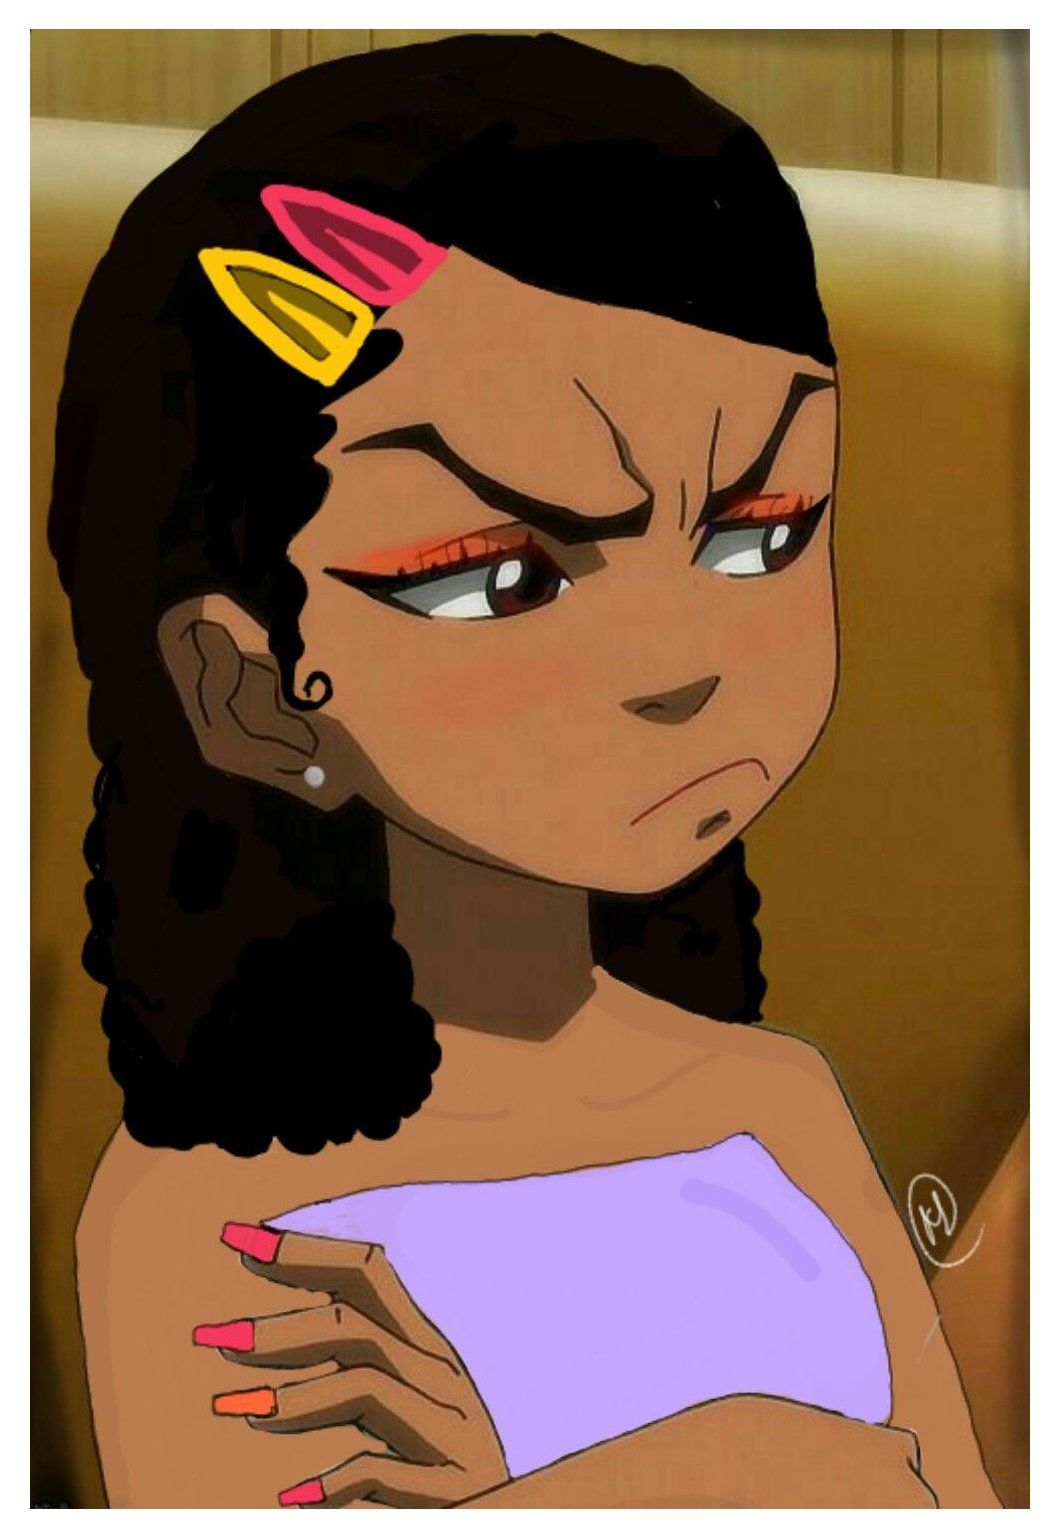 THE BOONDOCKS / GIRL #aesthetic #black #girl #cartoon #aestheticblackgirlcartoon. Black girl cartoon, Girl cartoon, Black girl art